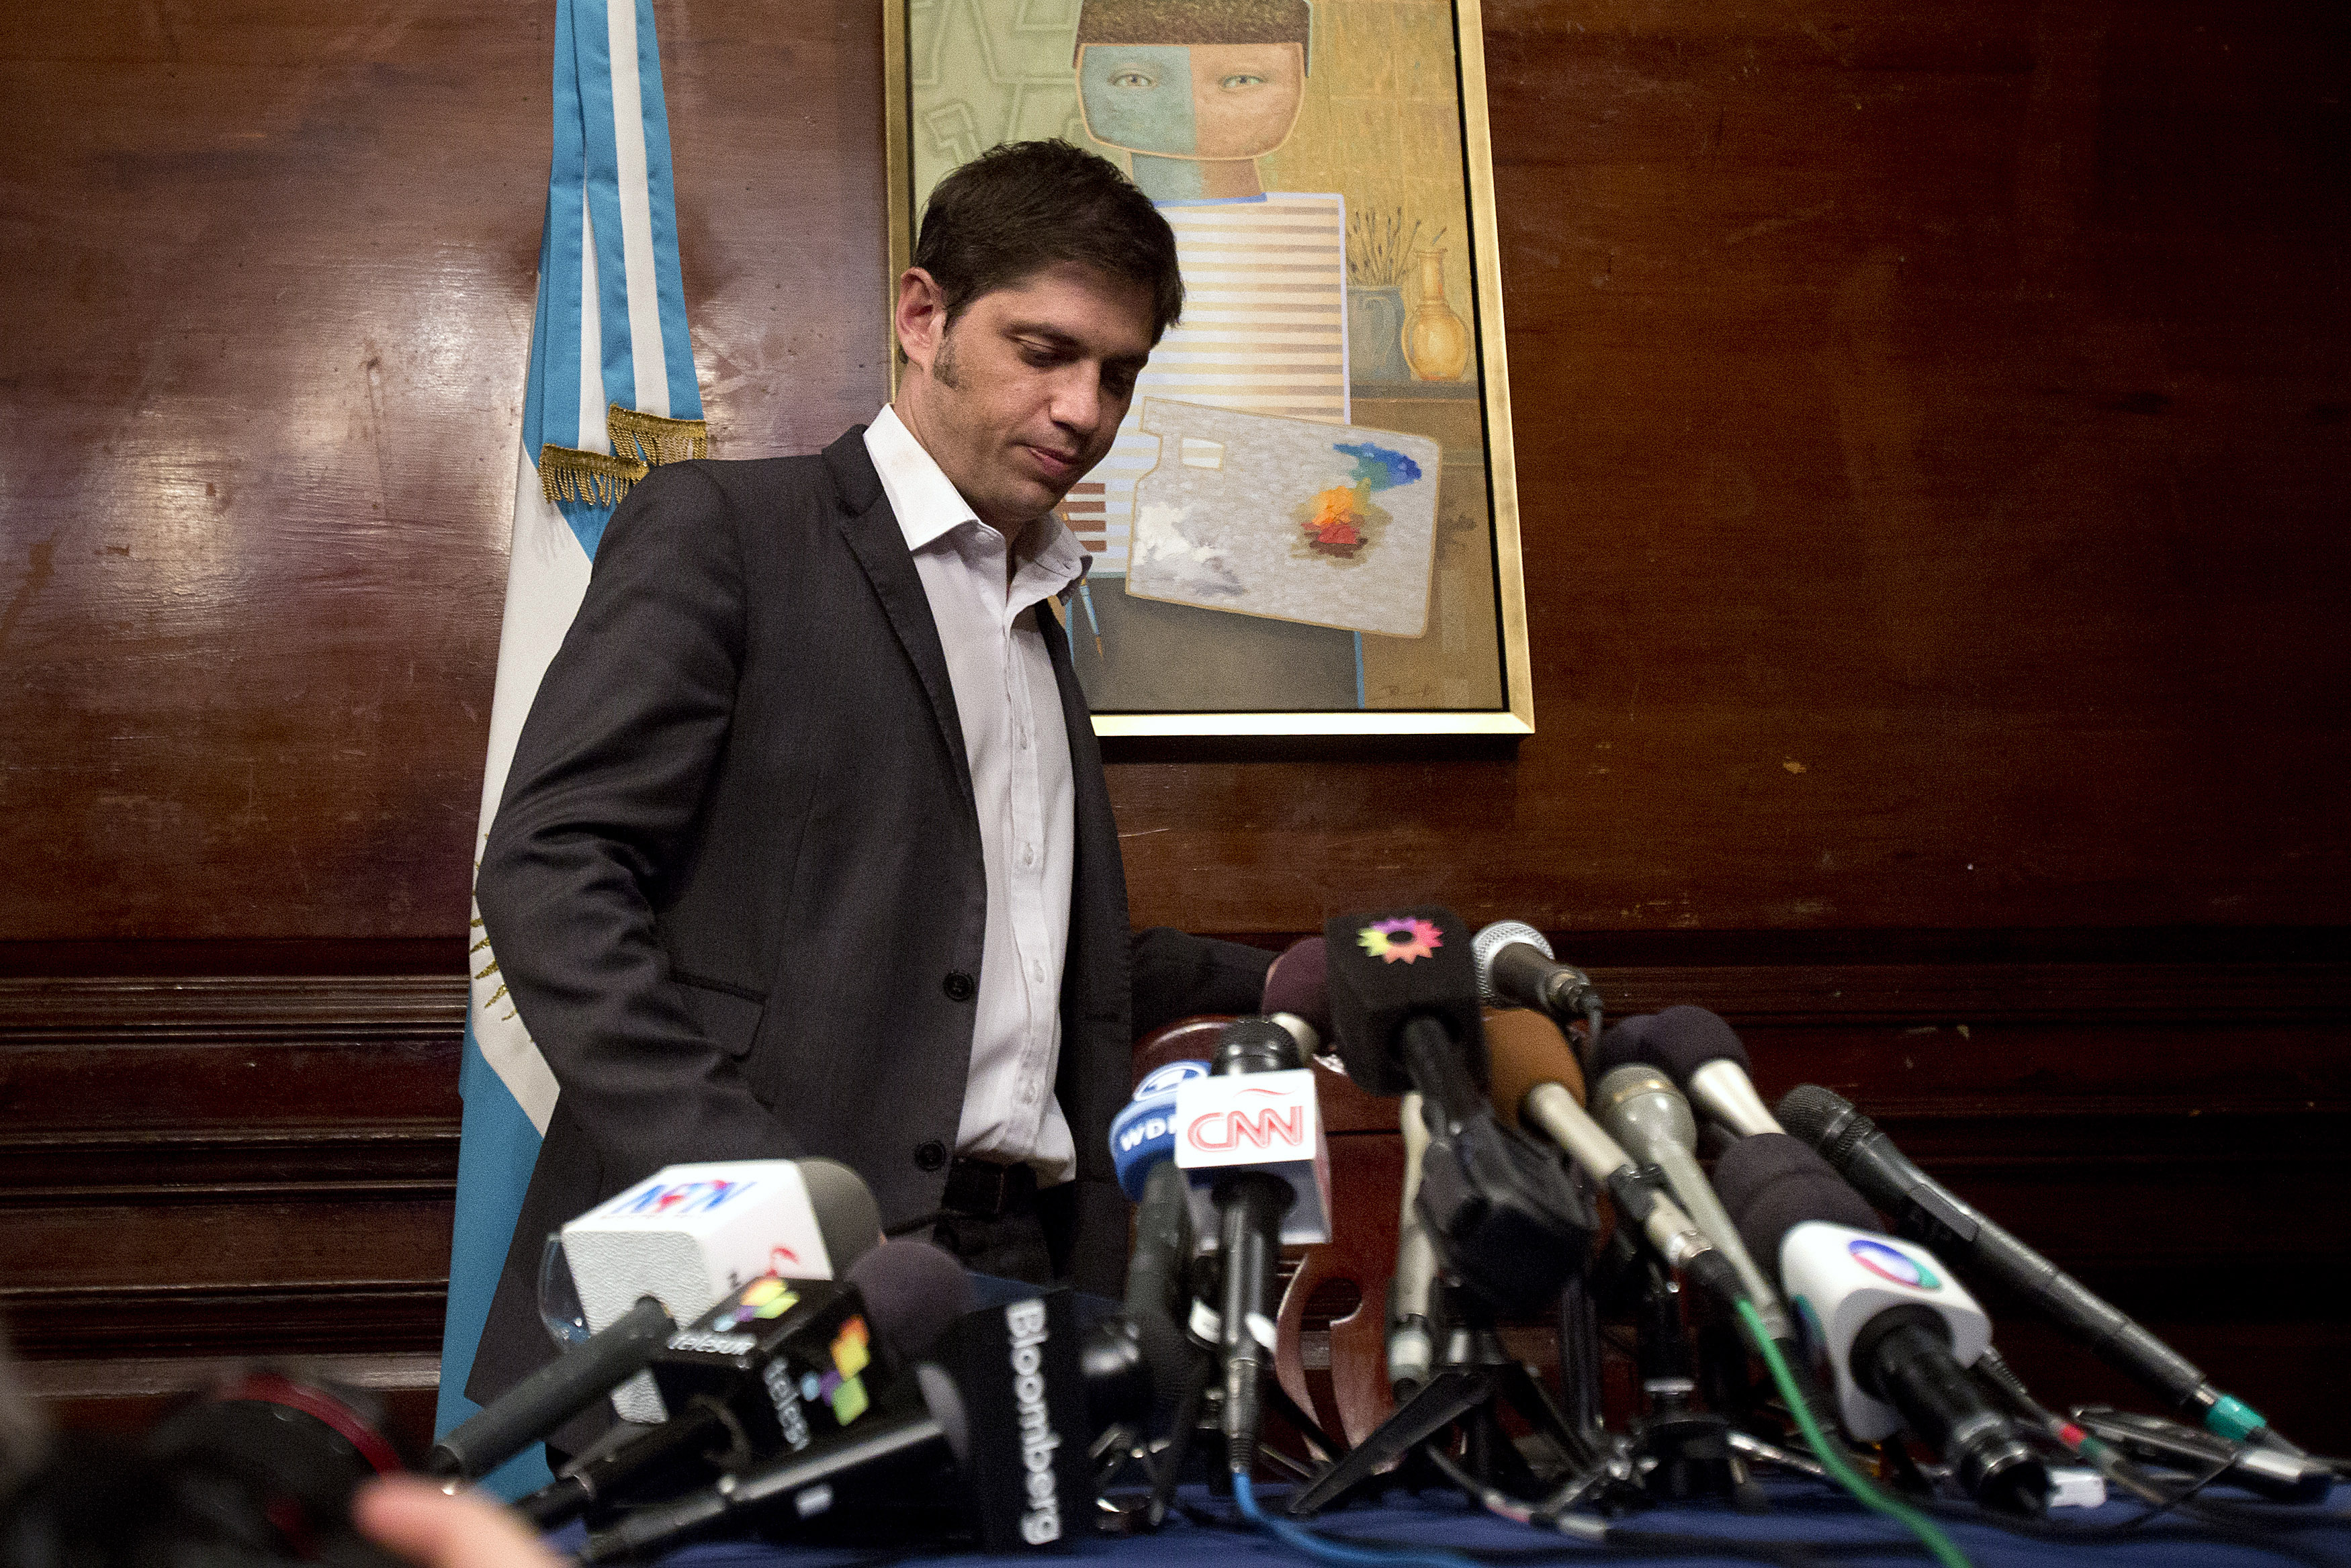 El ministro de economía argentino se ha referido a la situación de los fondos buitre como una interpretación ridícula de una cláusula. (Reuters)